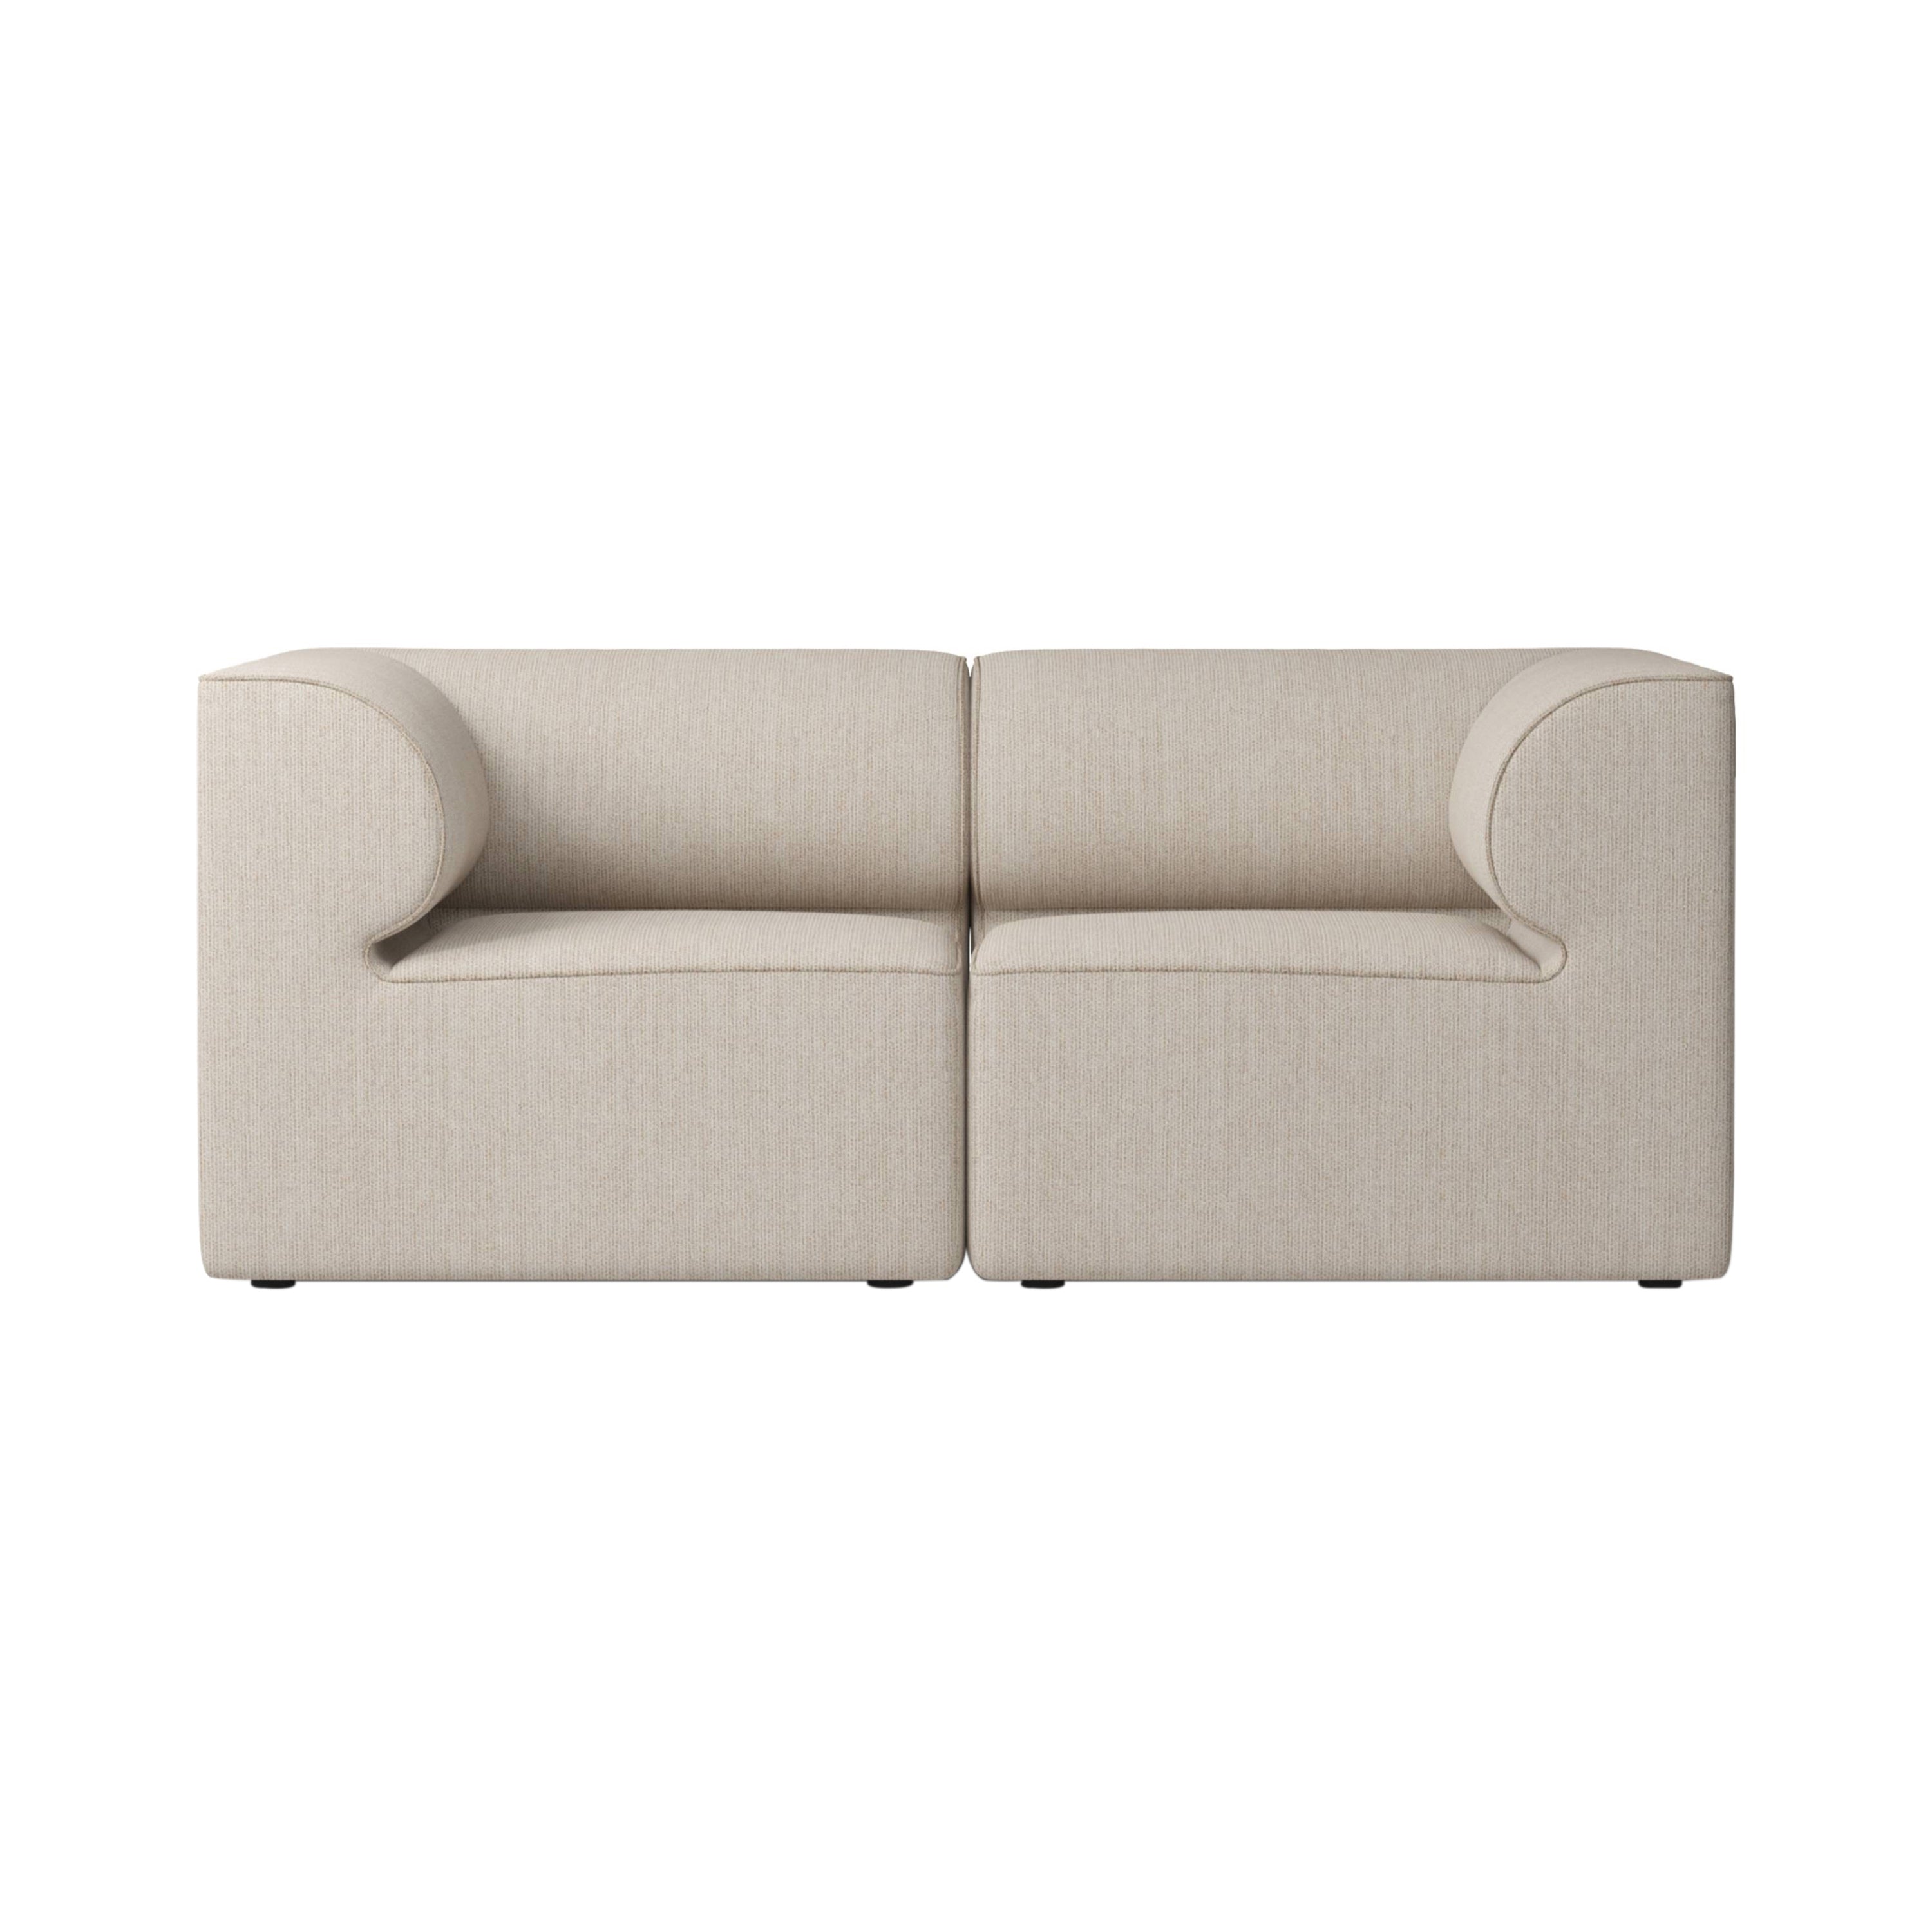 Eave 2 Seater Sofa: Large + Savanna 202